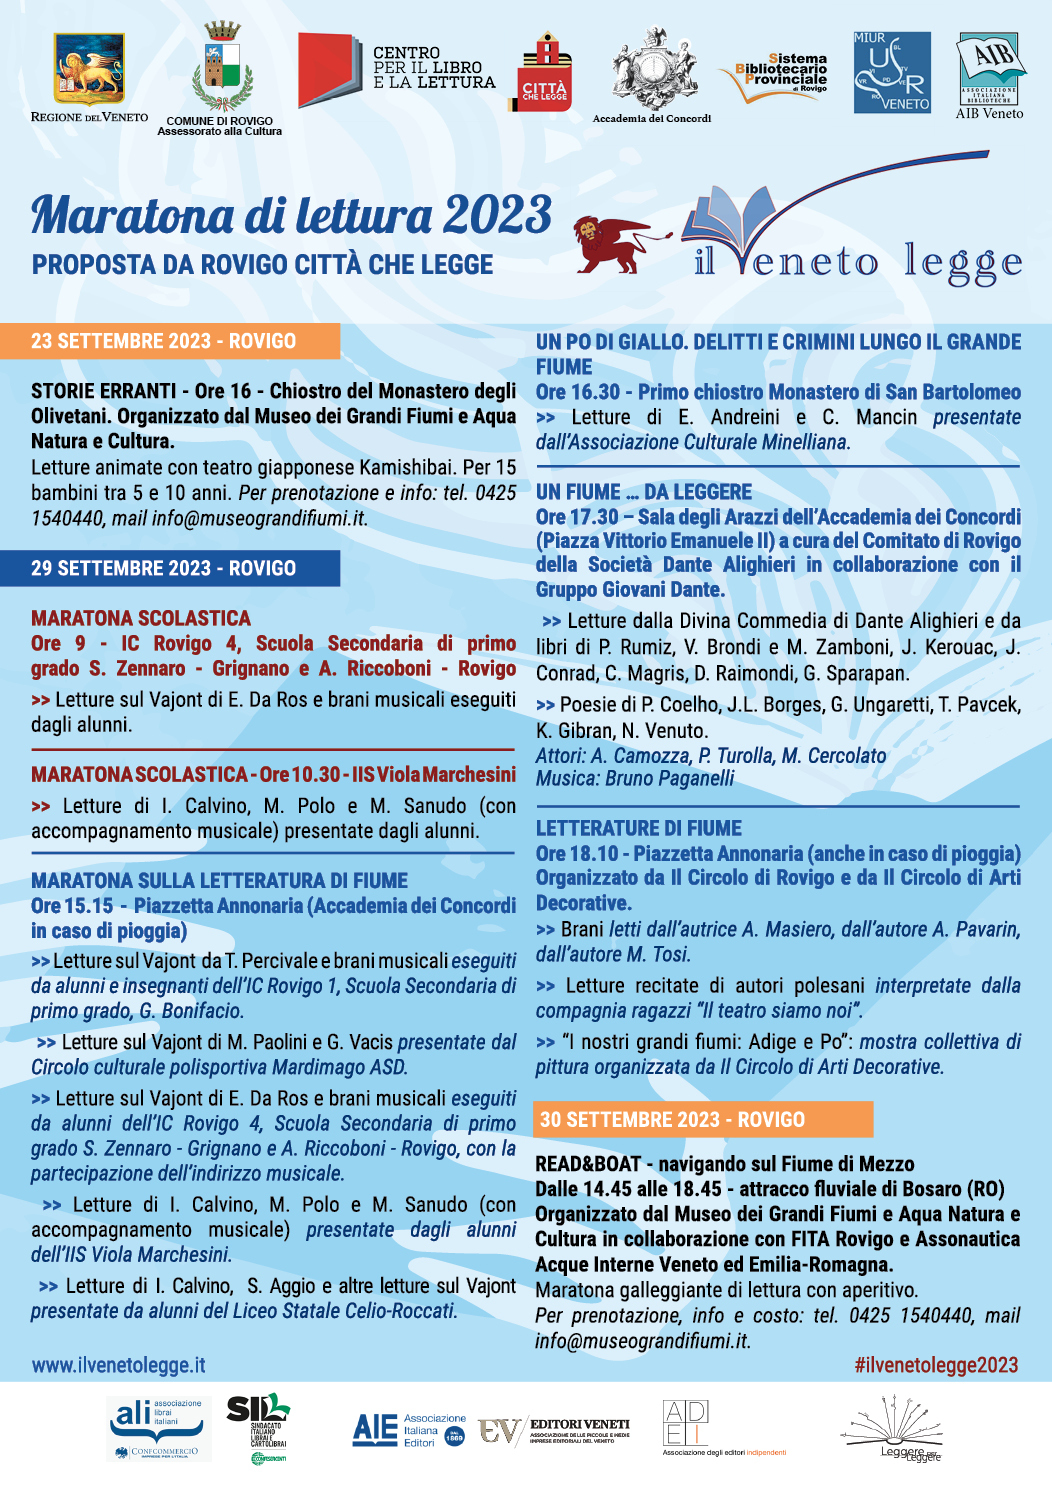 Locandina degli eventi previsti per la maratona di lettura del Veneto Legge 2023